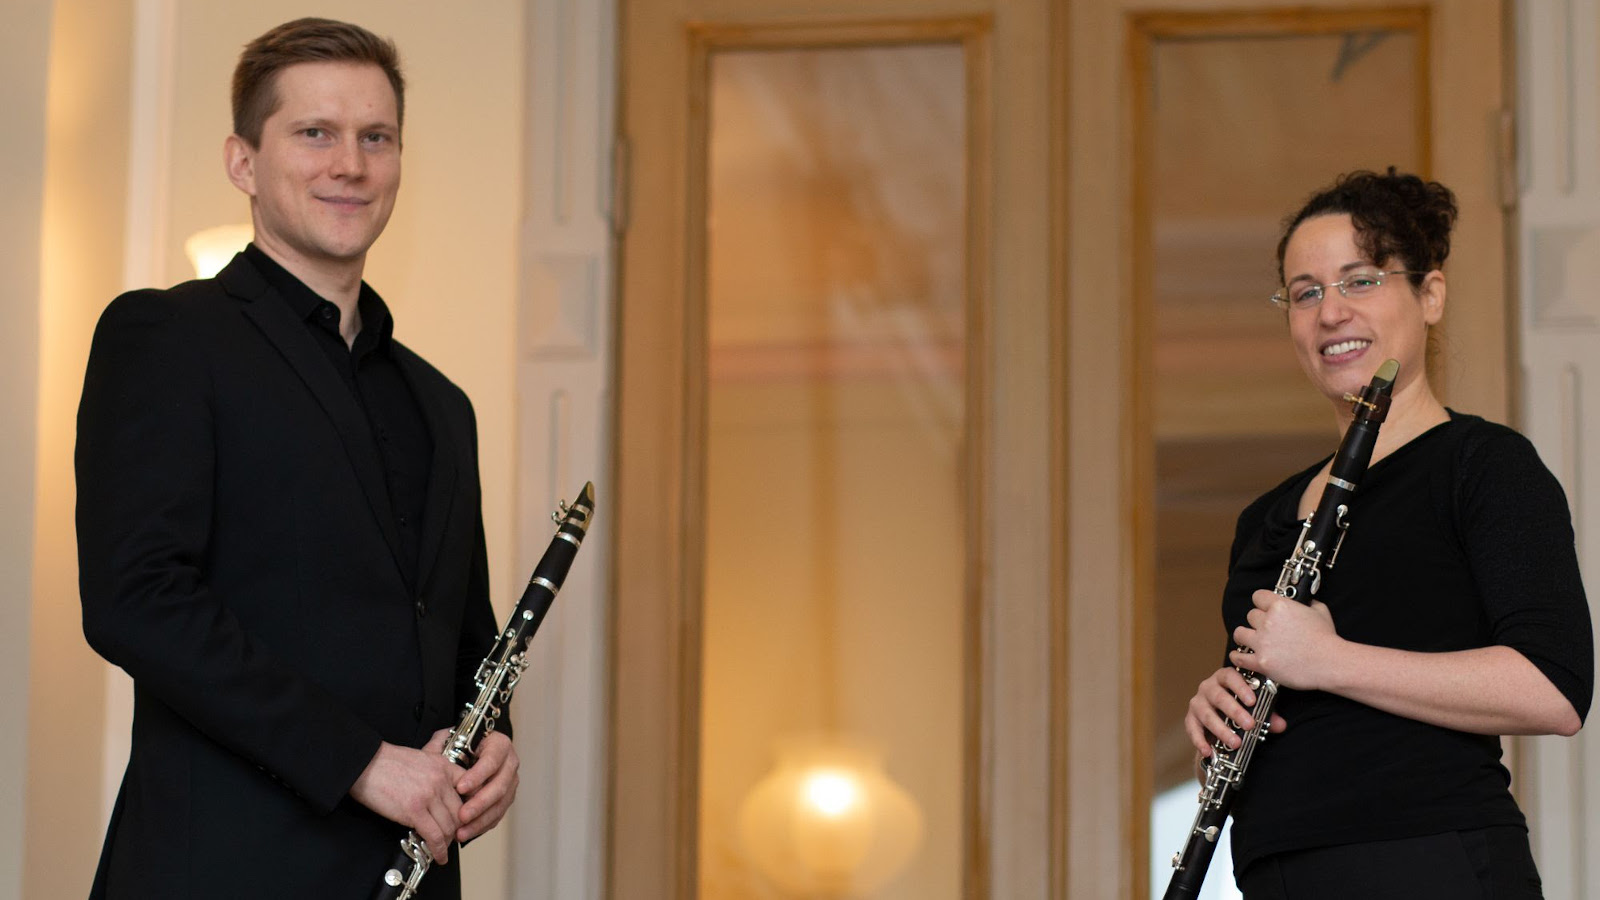 Kuvassa on kaksi klarinetistia, joista vasemmalla on mies klarinetti kädessään ja oikealla nainen myös klarinetti kädessään. 